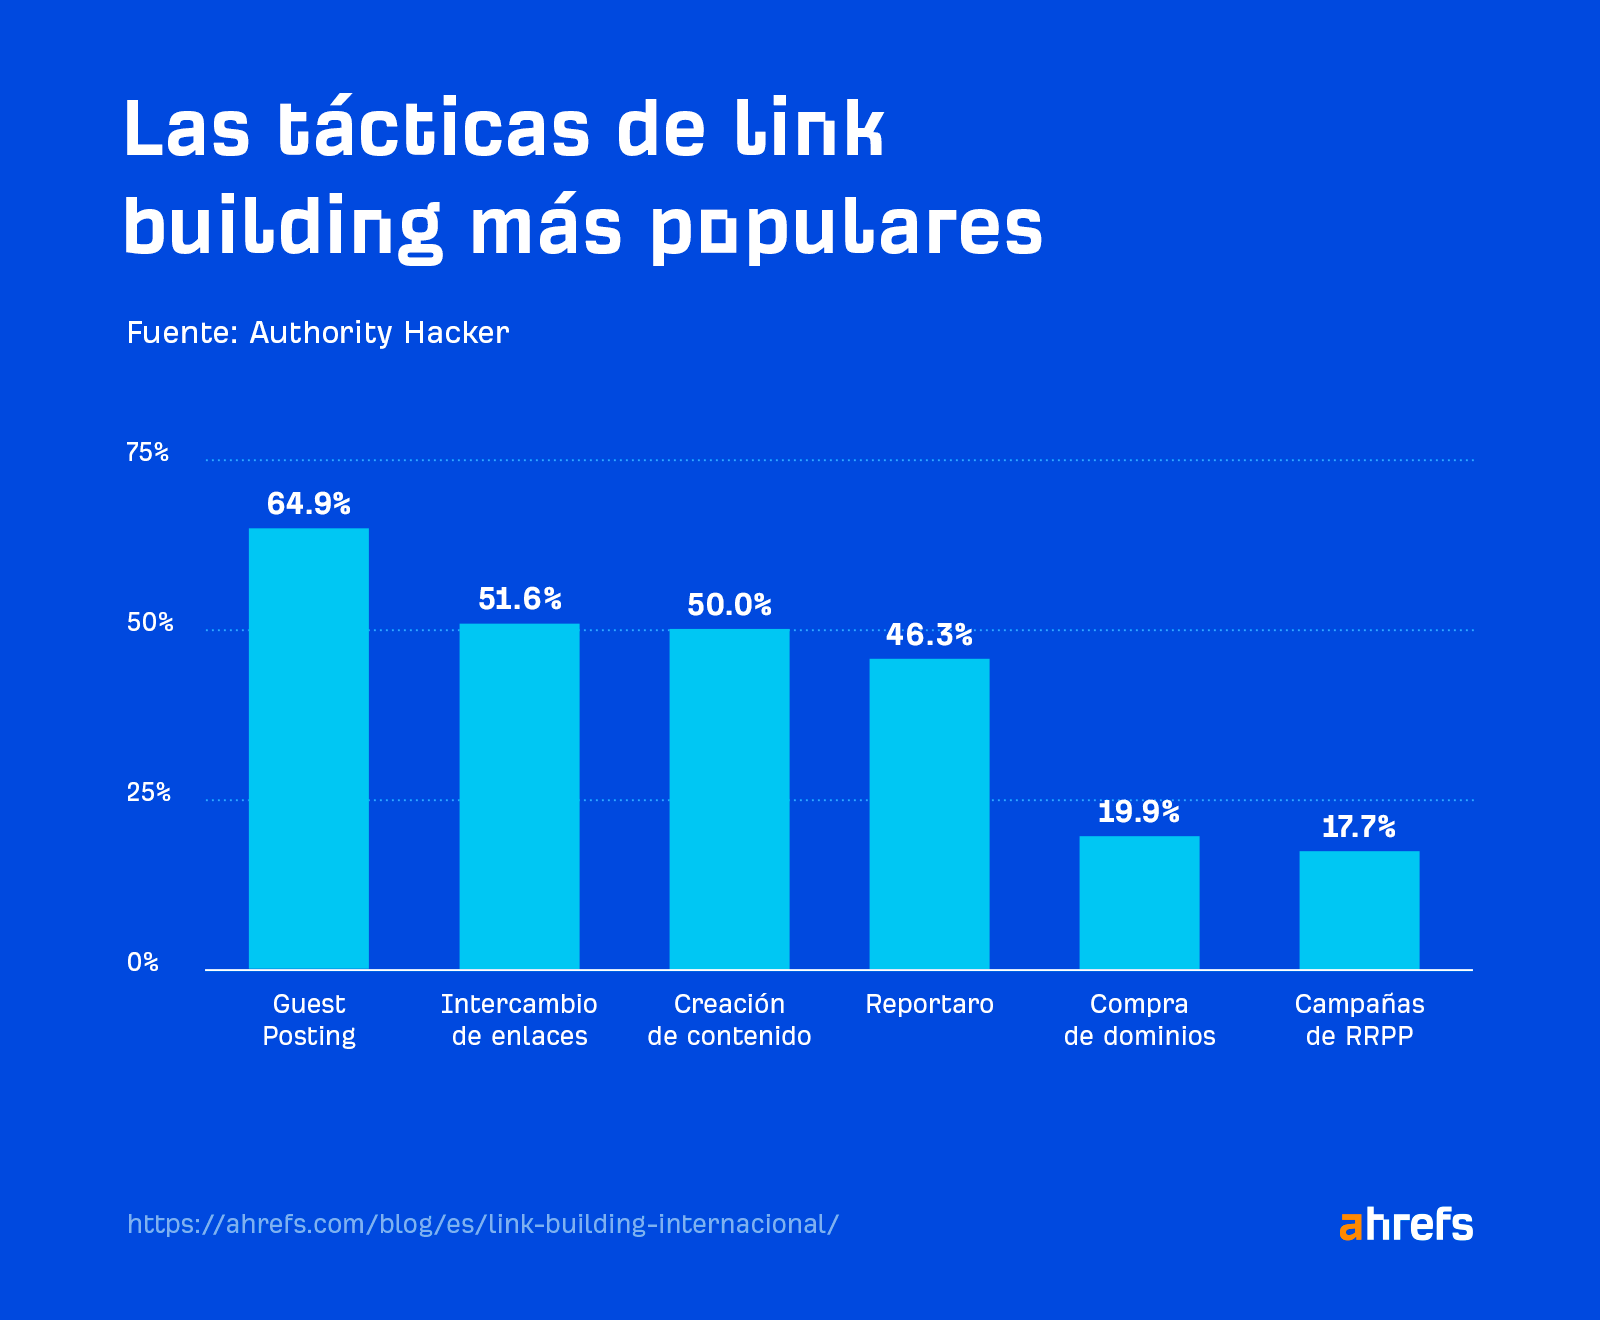 Las tácticas más populares de link building